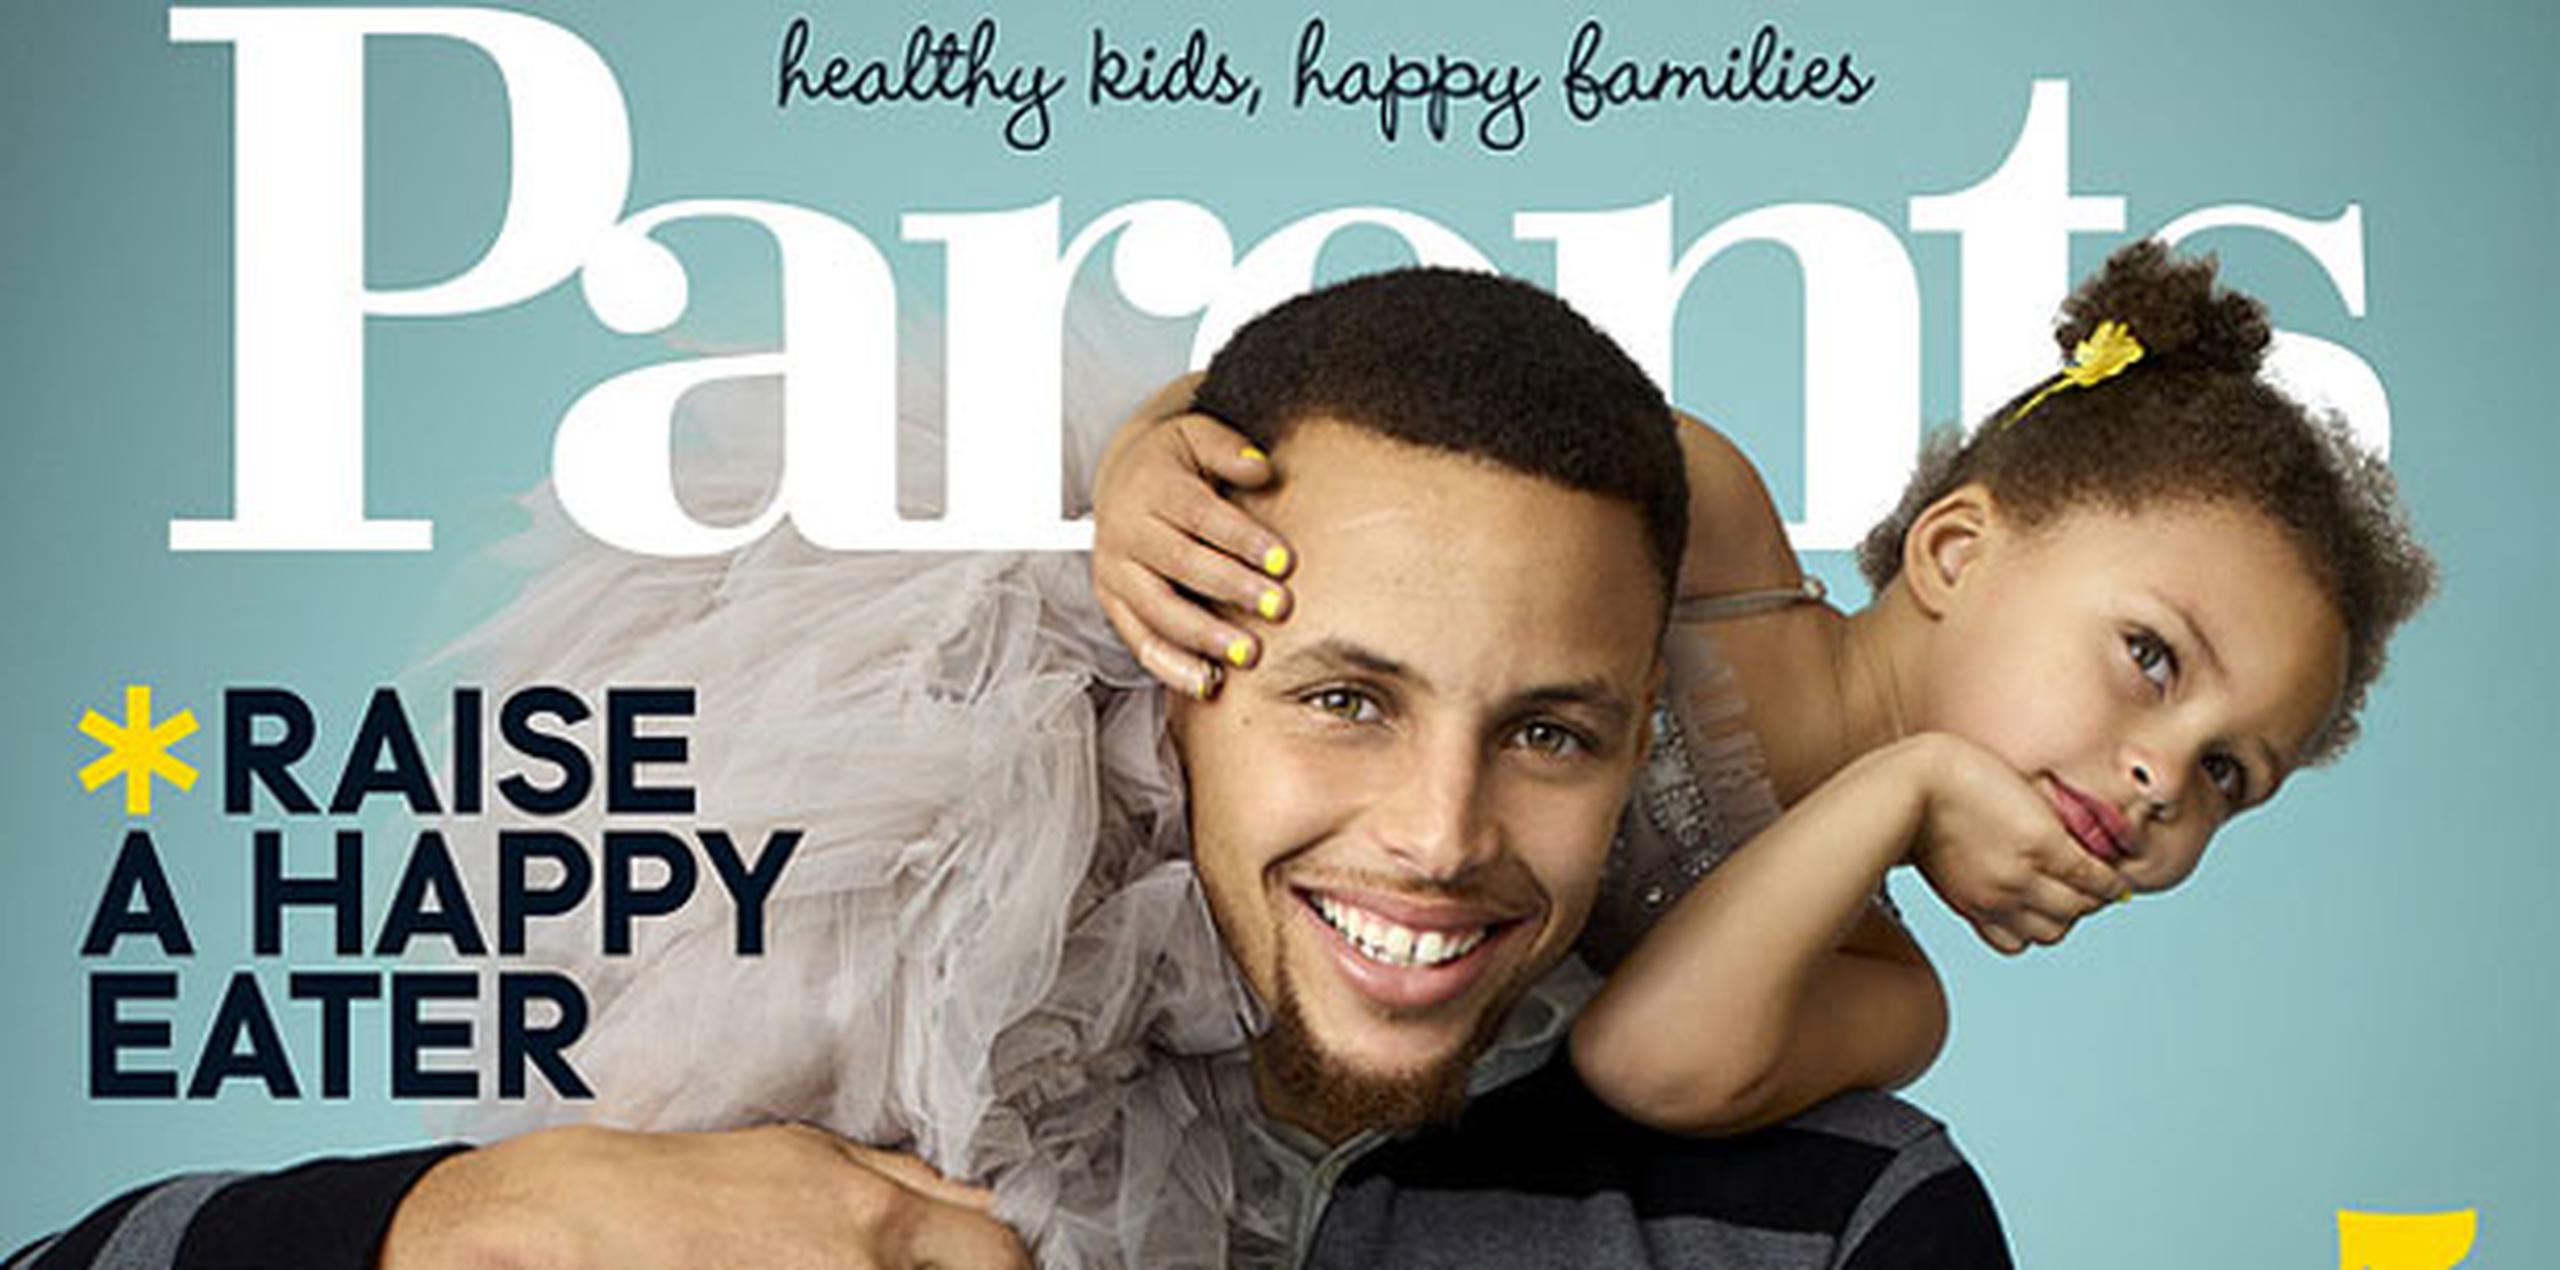 Curry, su esposa Ayesha, la pequeña Riley y la más reciente integrante de la familia, Ryan, compartieron sus vidas, anécdotas y experiencias como padres y familia en la edición de la revista Parents, que saldrá a la venta en junio. (Parents)